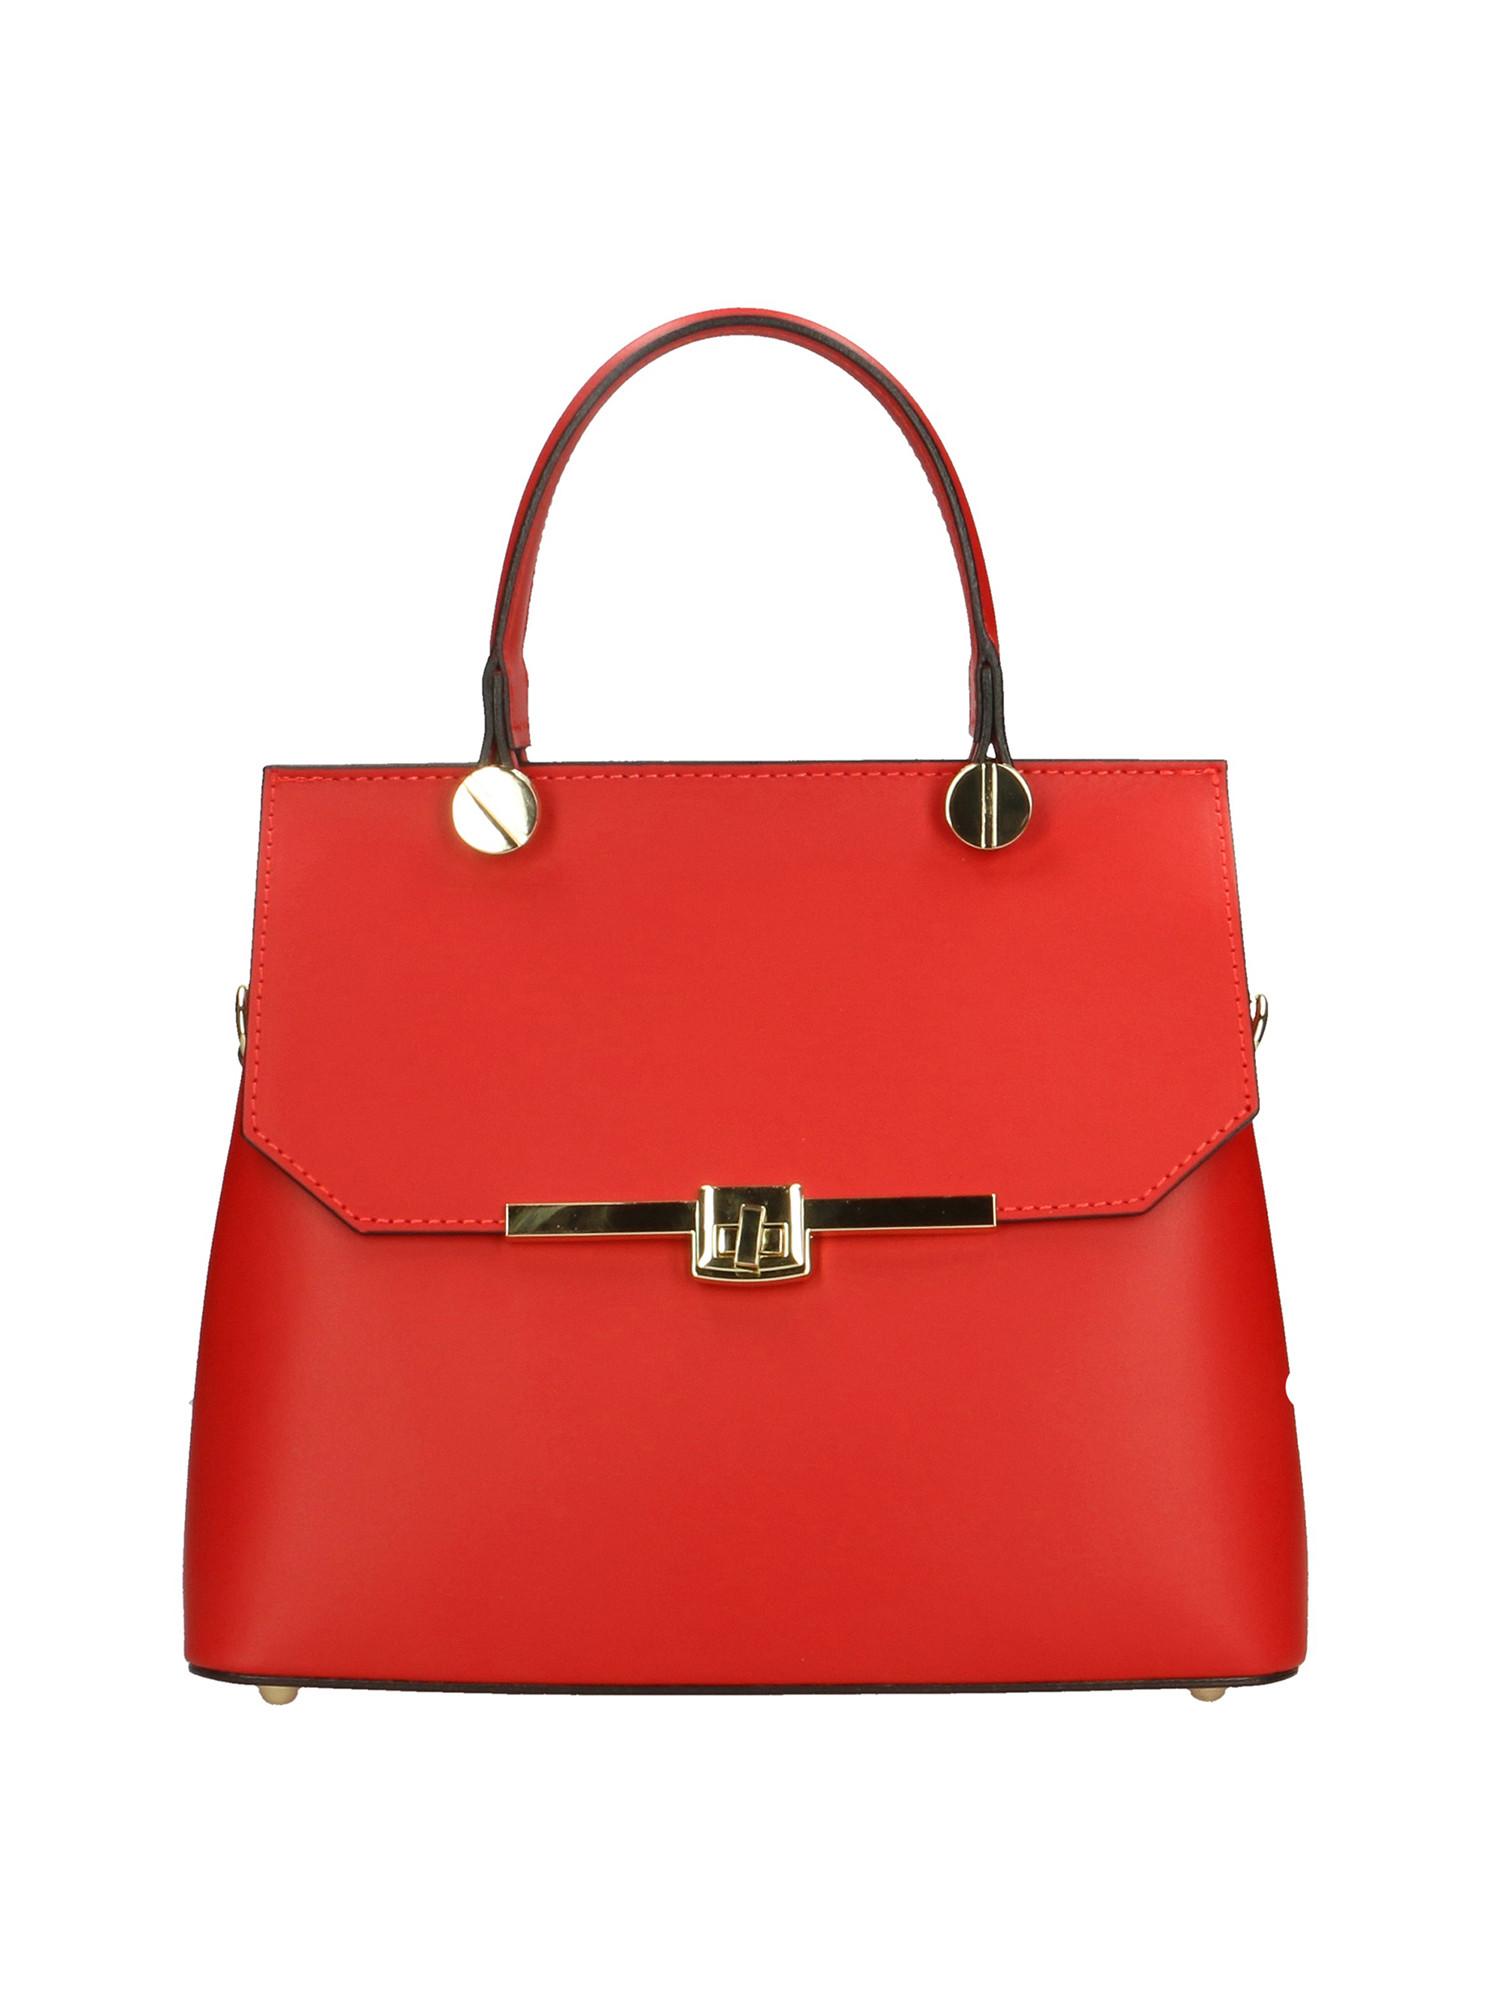 Handtasche Damen Rot Bunt ONE SIZE von Gave Lux